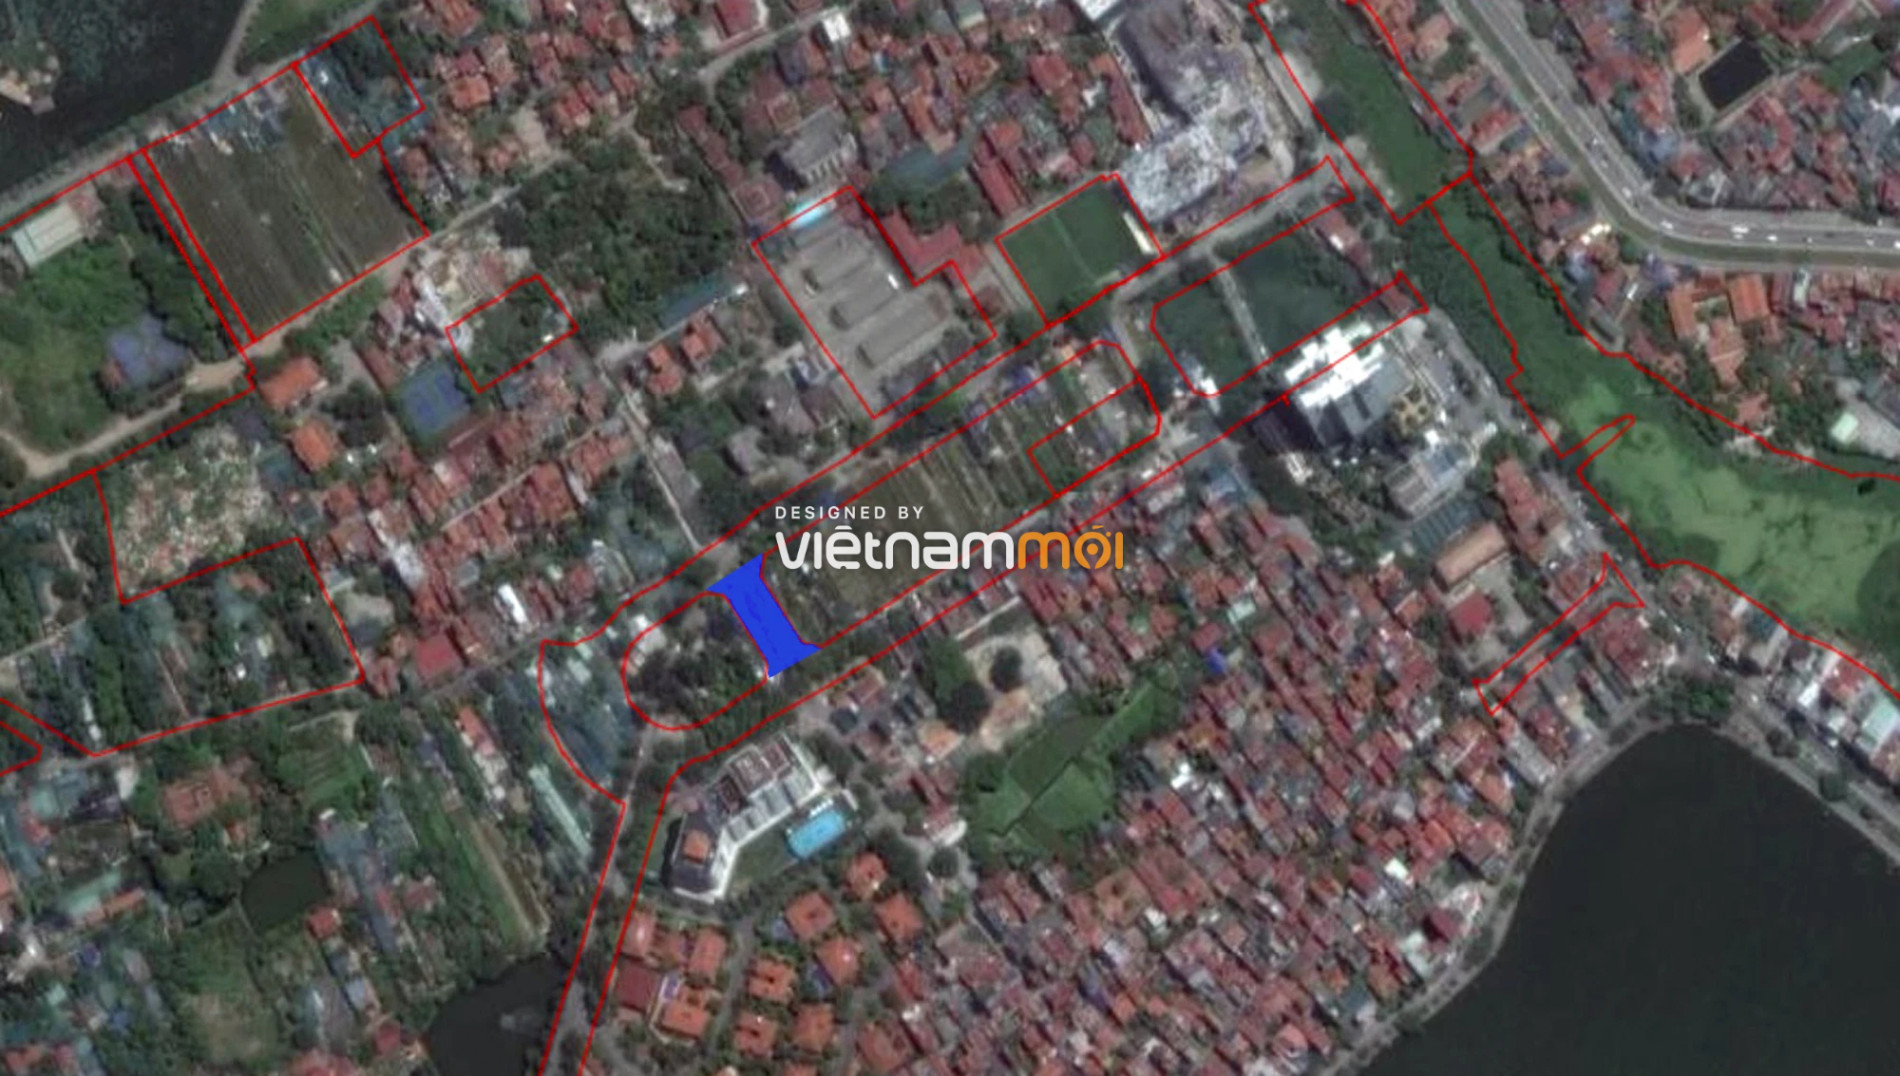 Những khu đất sắp thu hồi để mở đường ở quận Tây Hồ, Hà Nội (phần 5) - Ảnh 15.